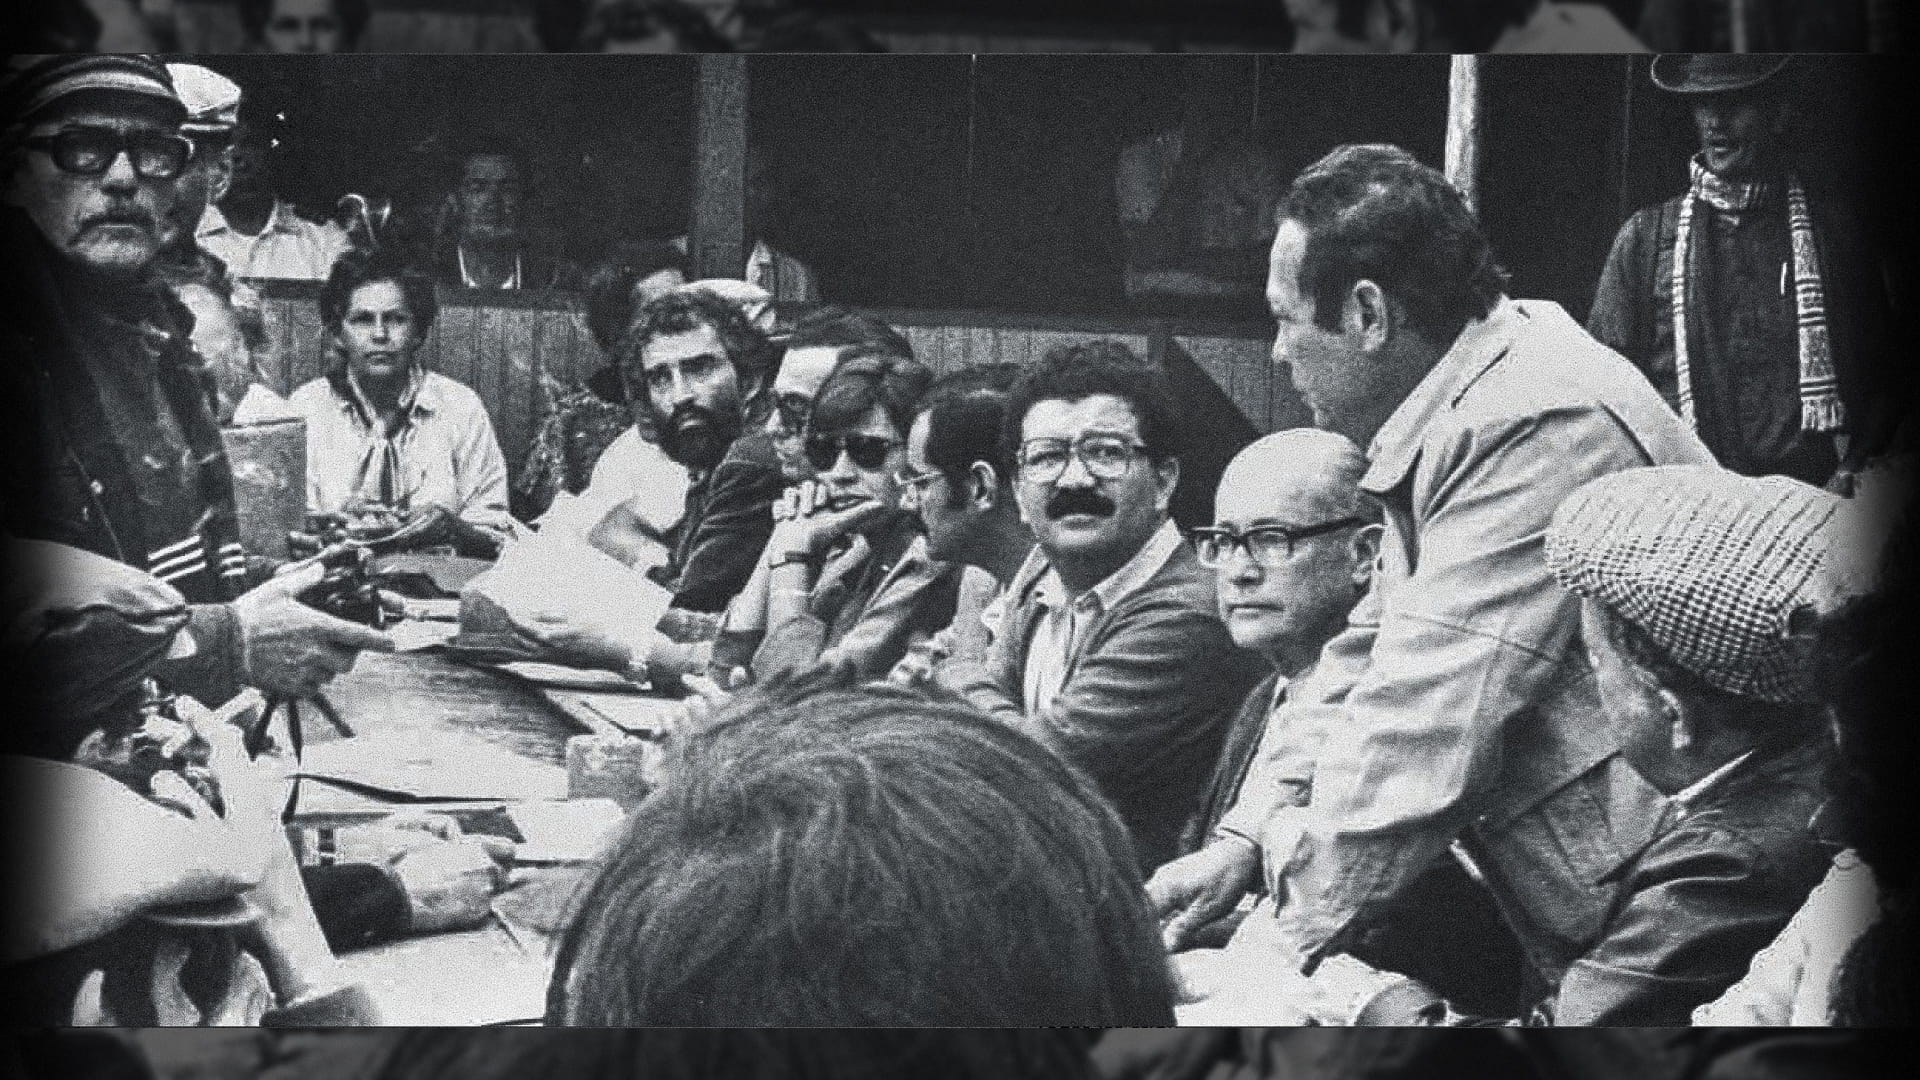 Los Acuerdos de La Uribe o Acuerdos de cese al Fuego y Tregua fueron los acuerdos entre la guerrilla colombiana Fuerzas Armadas Revolucionarias de Colombia (Farc) y el gobierno de Belisario Betancur el 28 de marzo de 1984